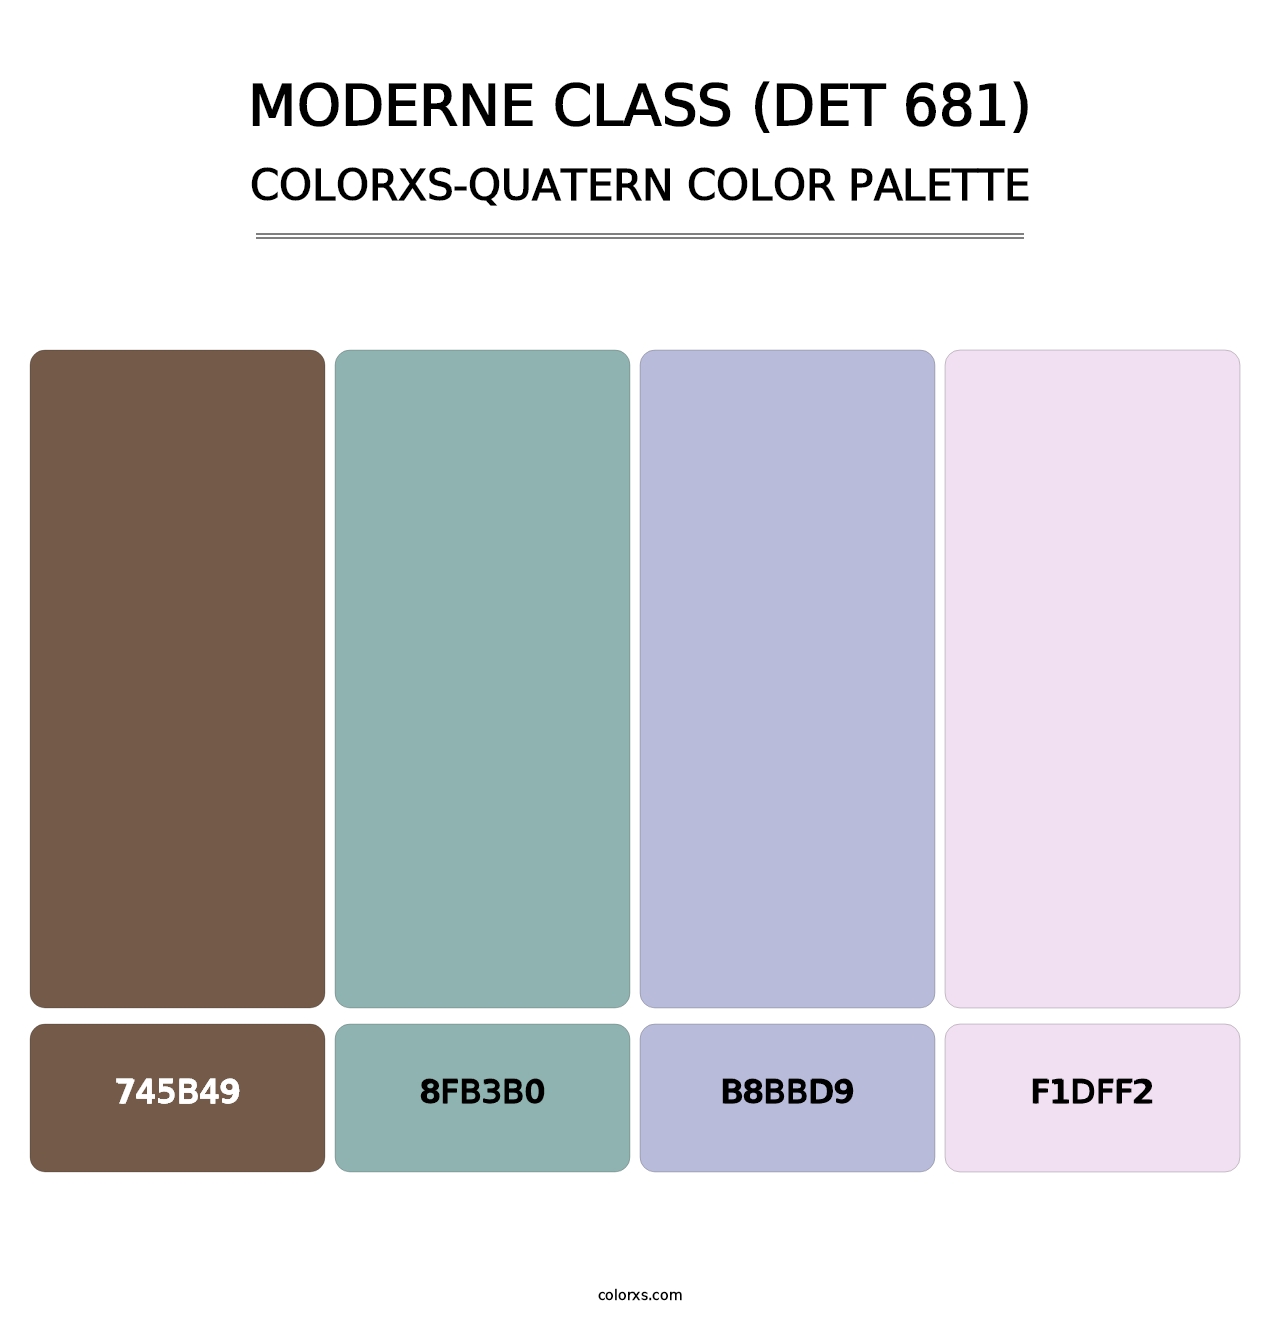 Moderne Class (DET 681) - Colorxs Quatern Palette